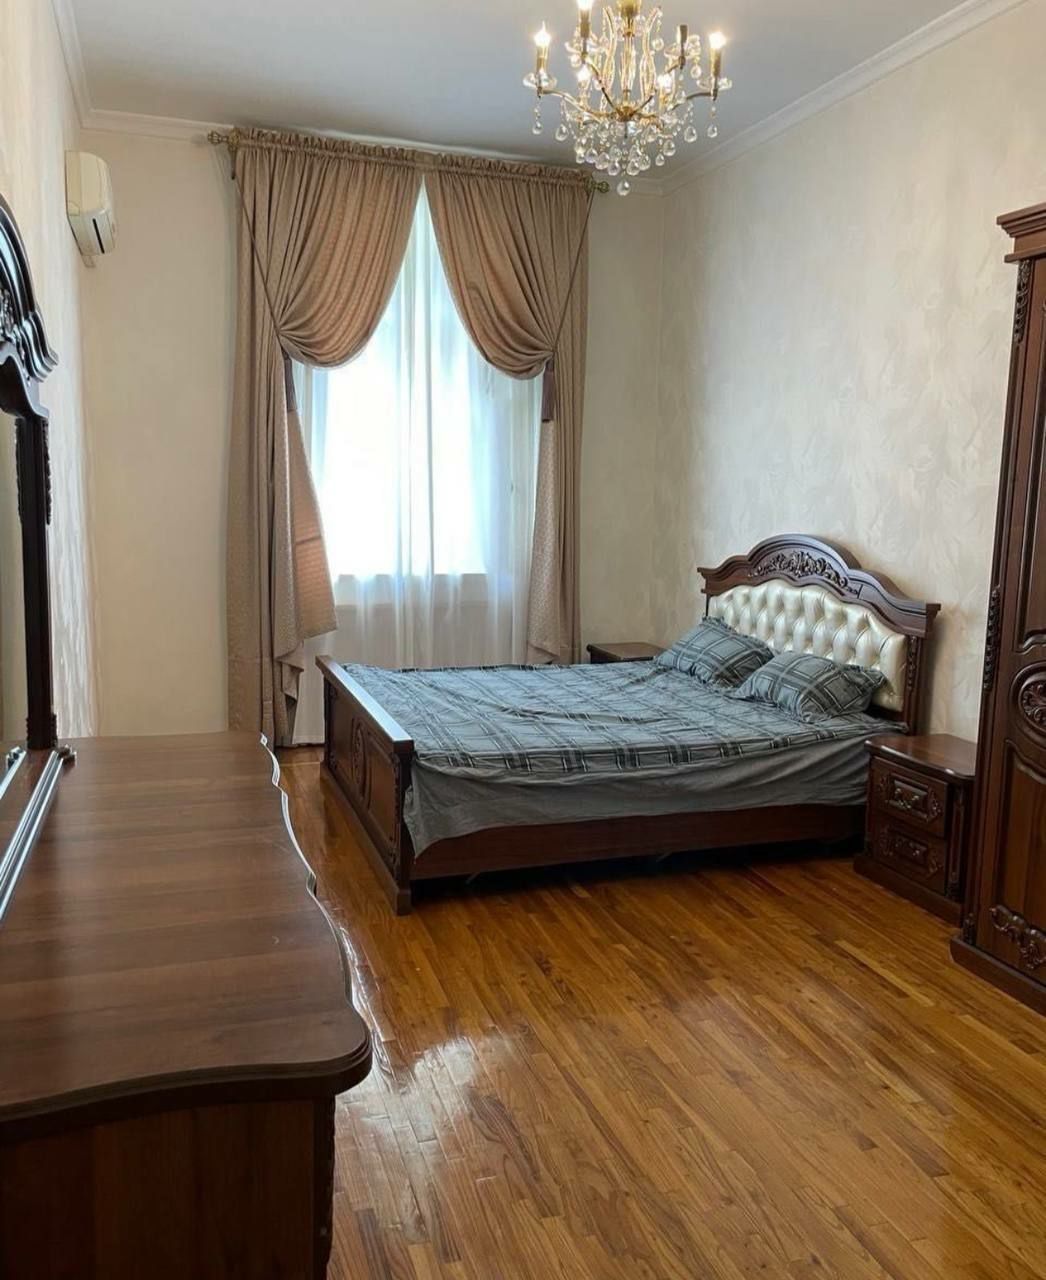 Большая 3комнатная квартира в центре Ташкента Улица Чехова 140м2 с Рем